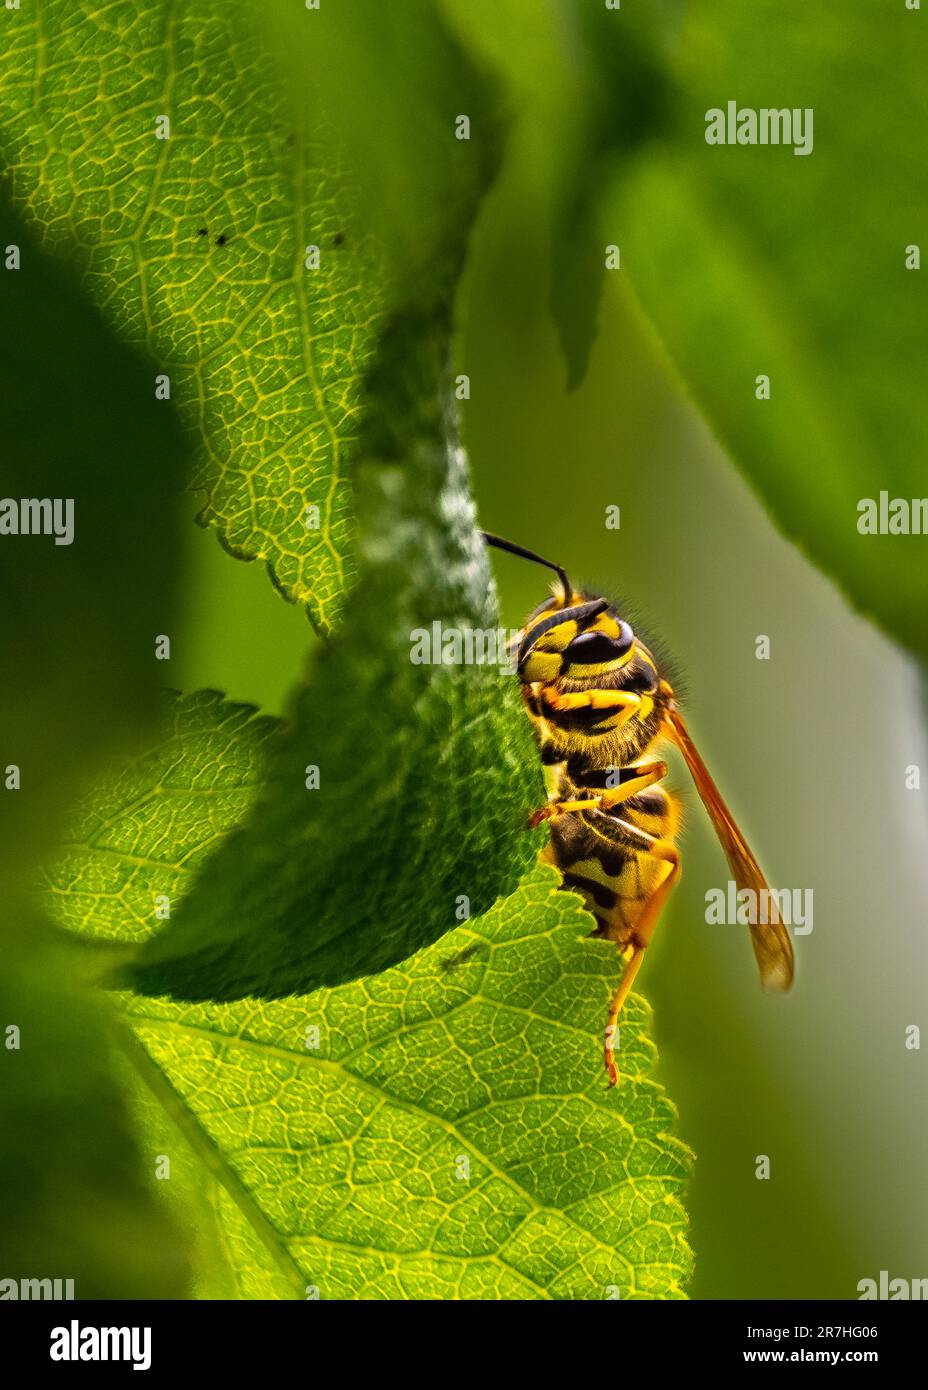 WASP.They spesso rimanere nell'ambiente umano, alla ricerca di cibo su sap albero, scarti di cibo, dolci.Qual è la differenza tra vespe, api e calabroni. Foto Stock